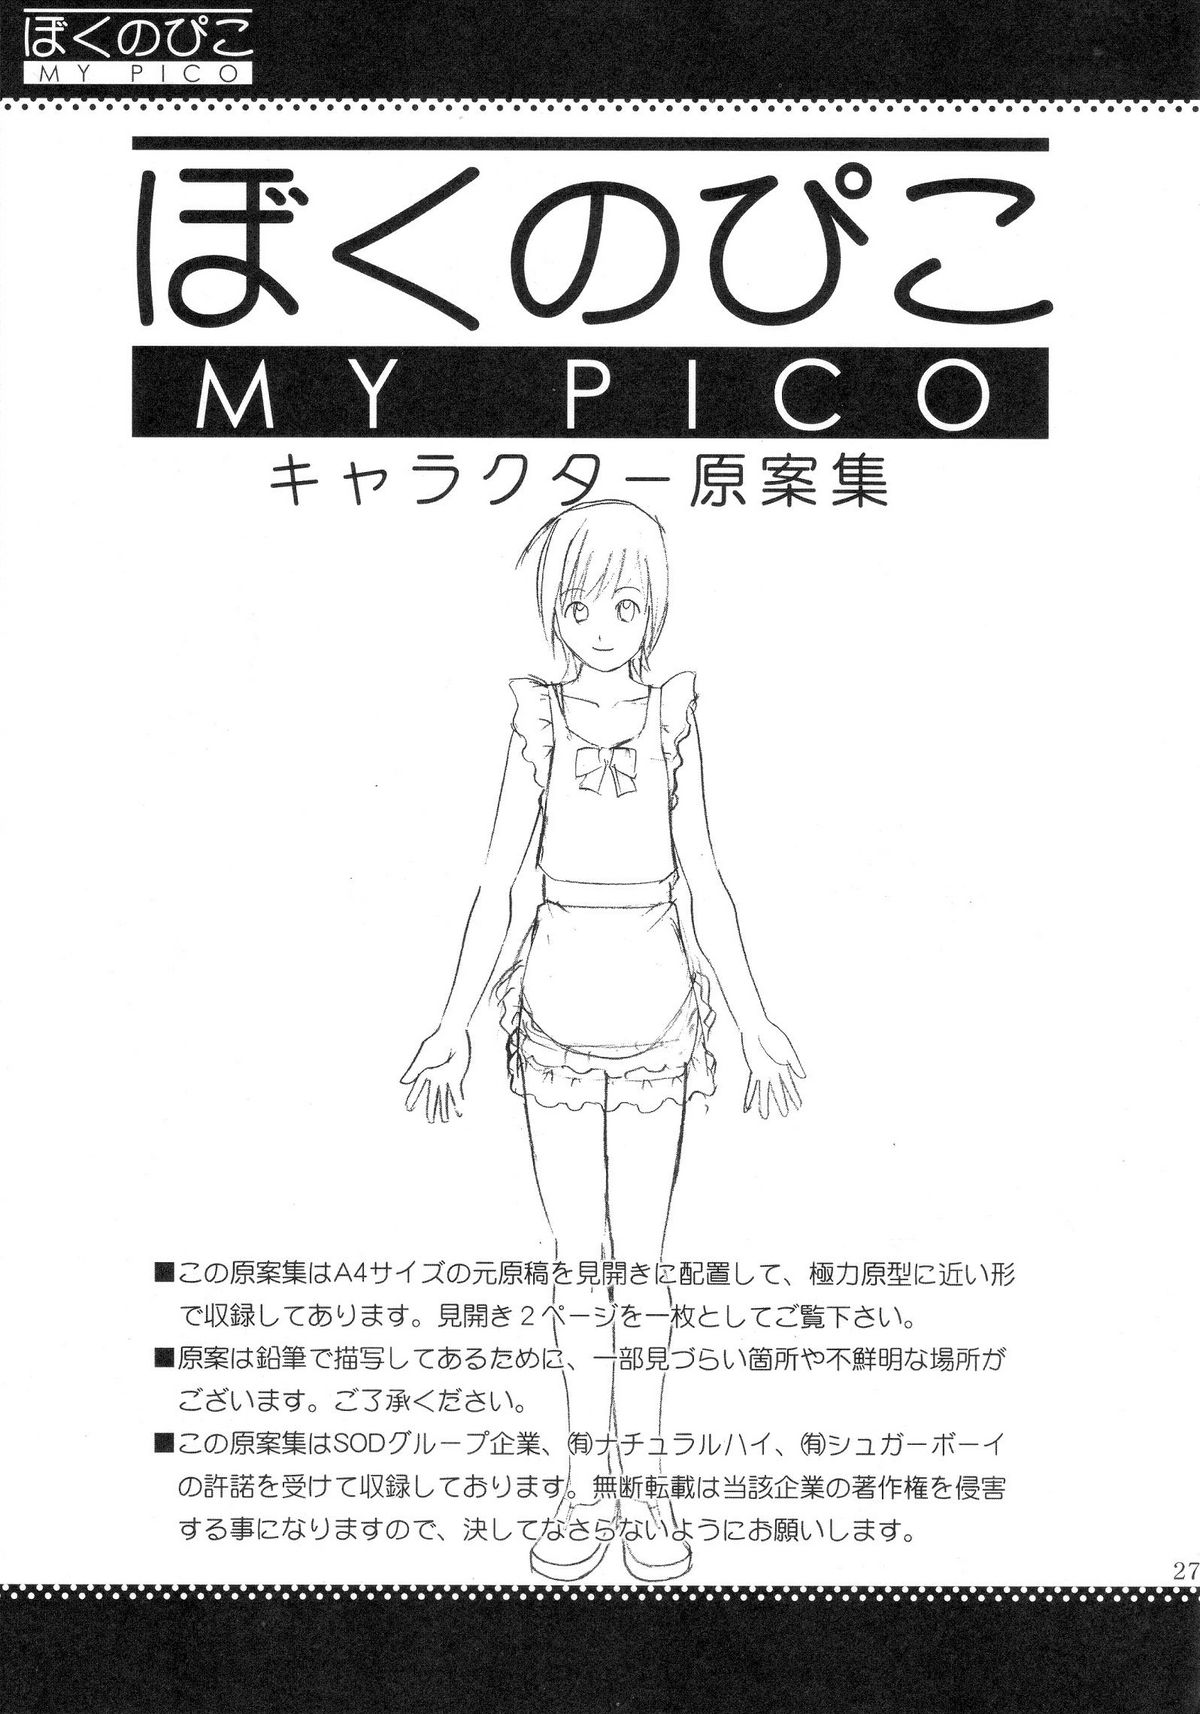 (COMIC1) [彩画堂] ぼくのぴこ コミック+公式キャラクター原案集 (ぼくのぴこ)